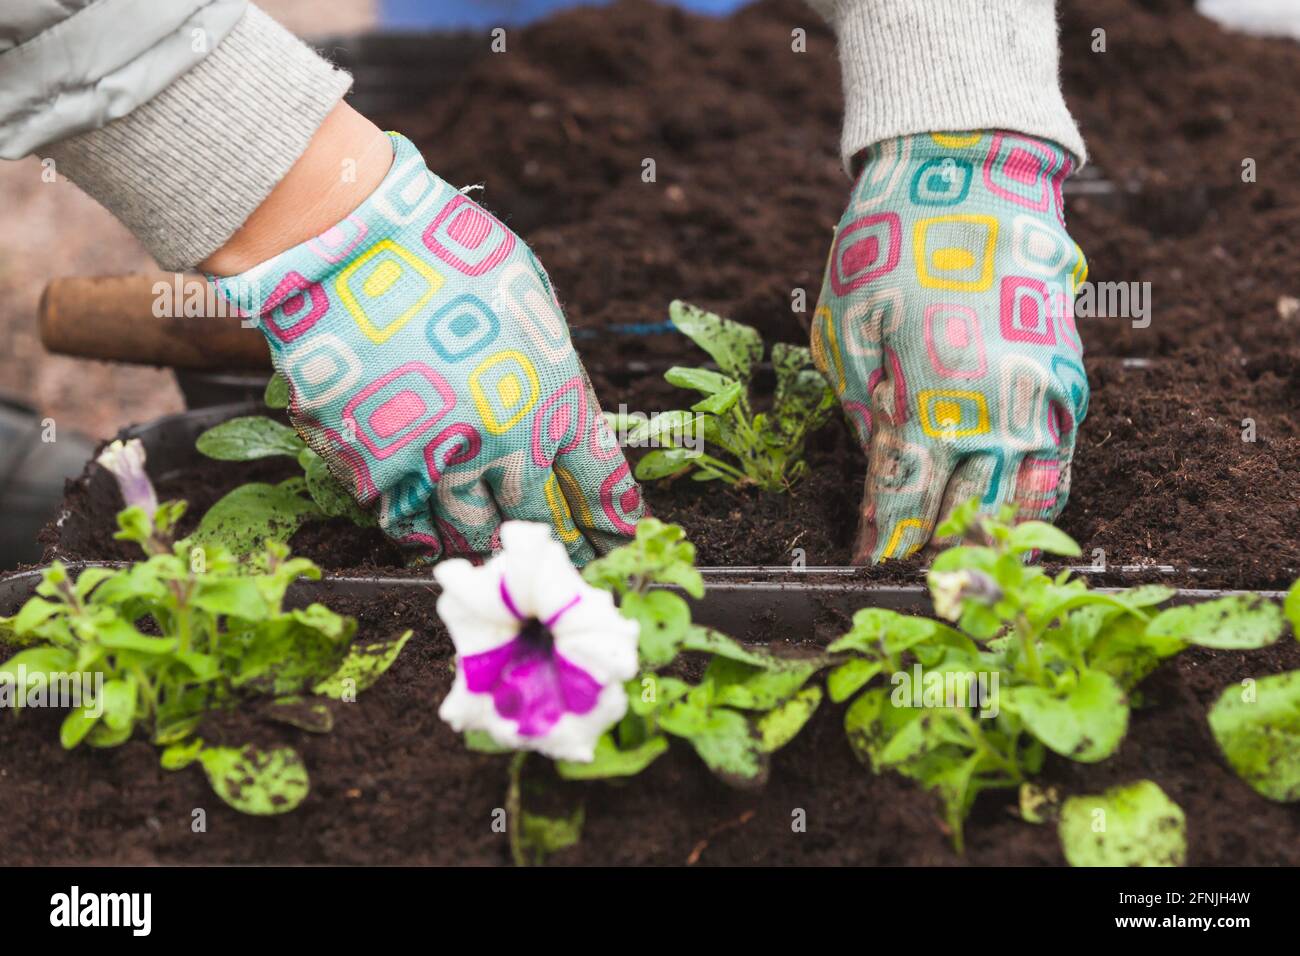 Gärtner repliants Blume Sämlinge in dekorativen Töpfen, Nahaufnahme der Hände in Handschuhen mit selektivem weichen Fokus Stockfoto